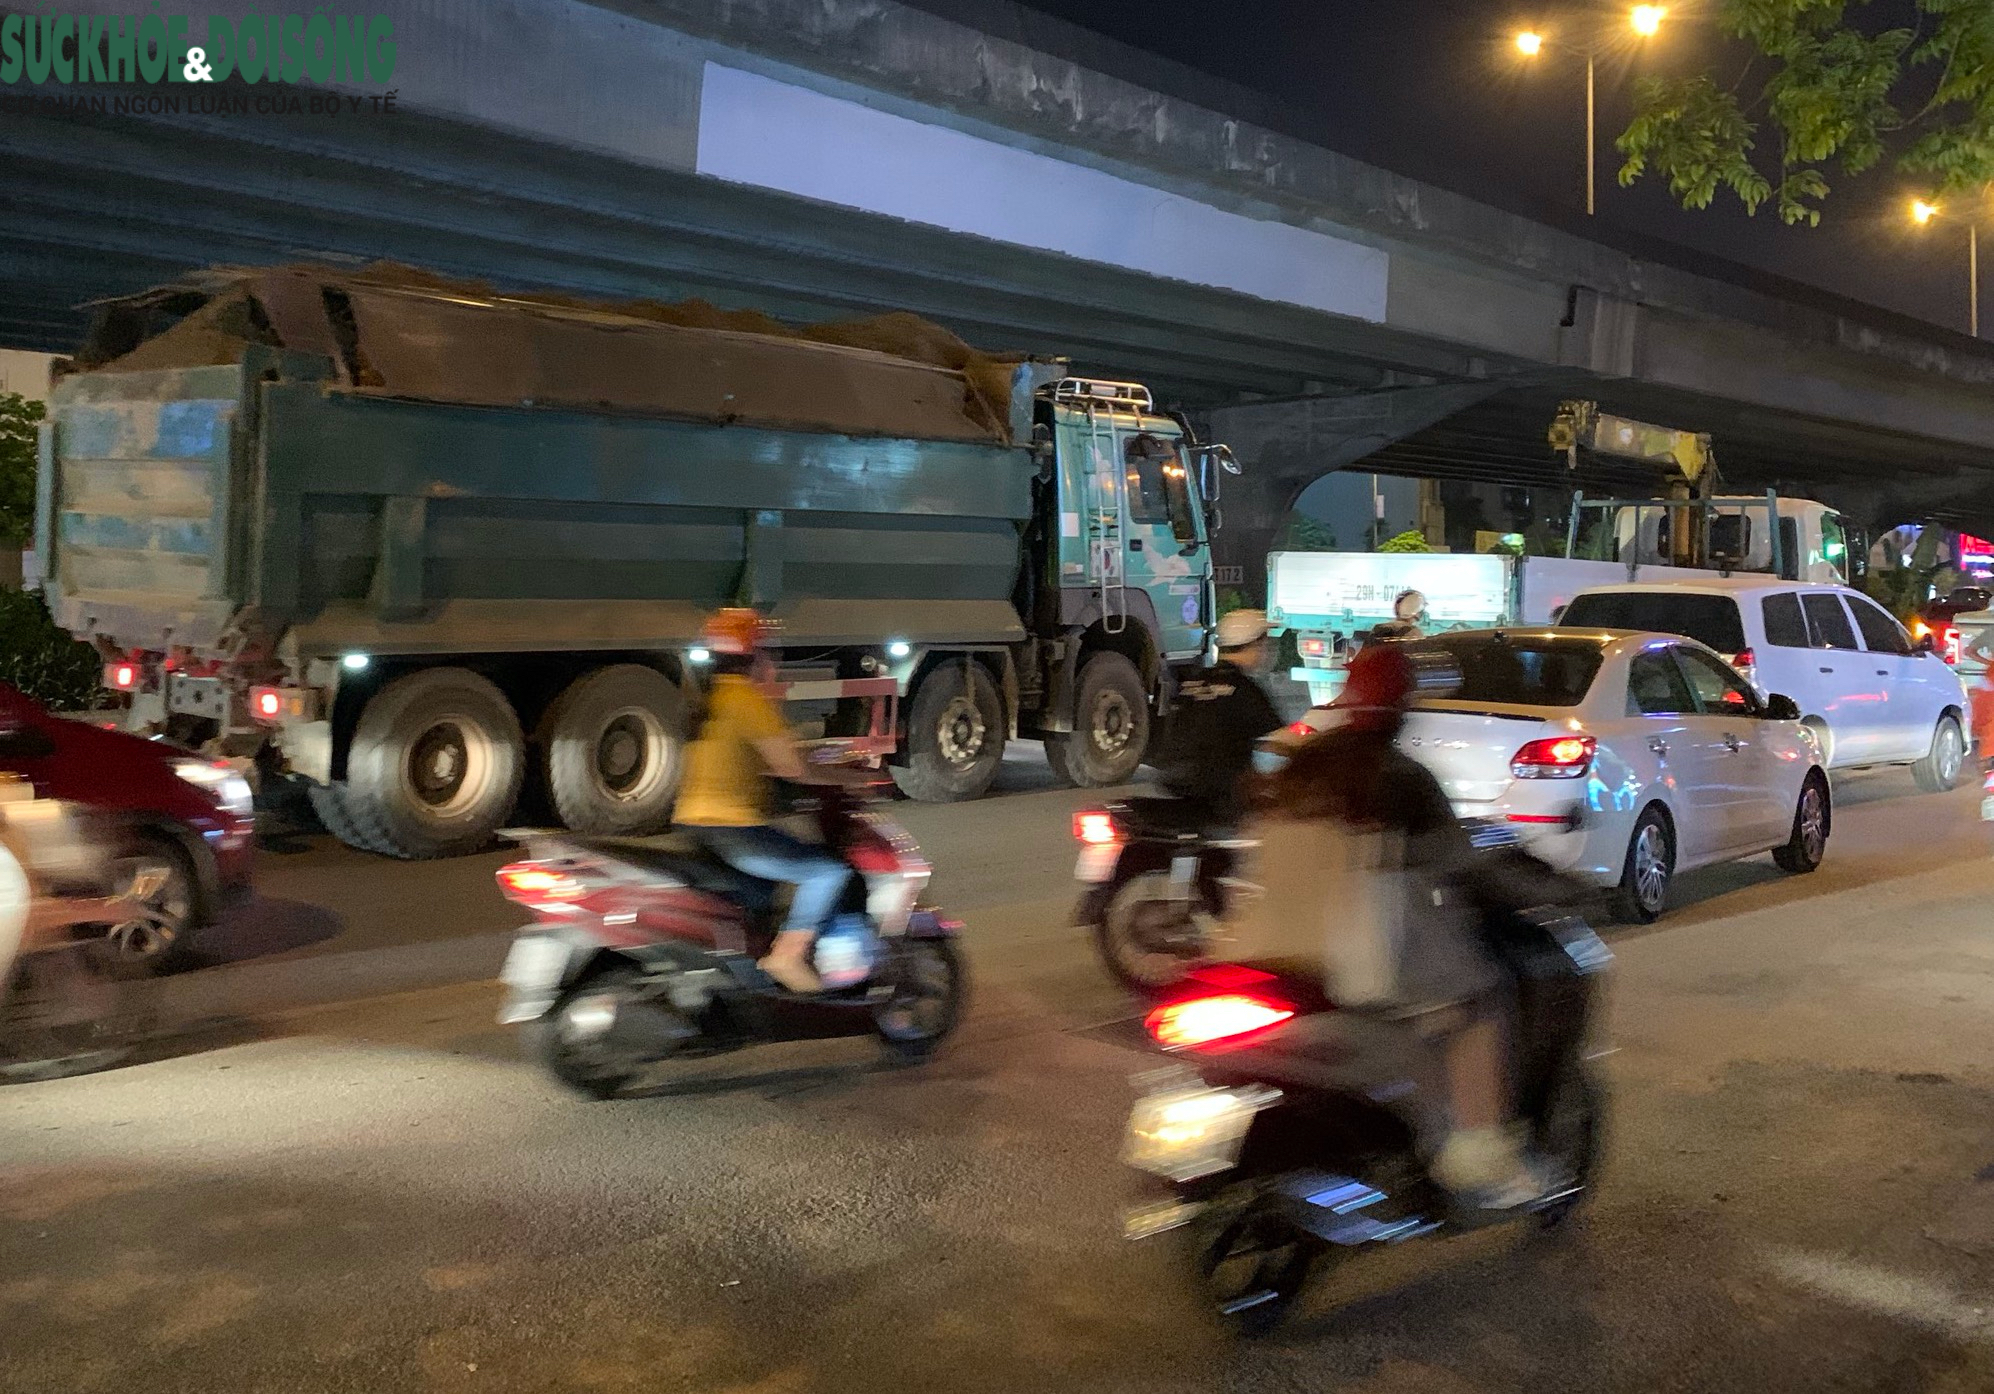 Sự xuất hiện của xe quá khổ là một trong những đặc điểm của đường phố Hà Nội đêm. Những chiếc xe tải, xe container to lớn cùng với đèn pha sáng rực rỡ làm nên một khung cảnh kỳ thú. Để tận hưởng sự độc đáo này, hãy thưởng thức những hình ảnh độc đáo được chúng tôi chọn lọc.